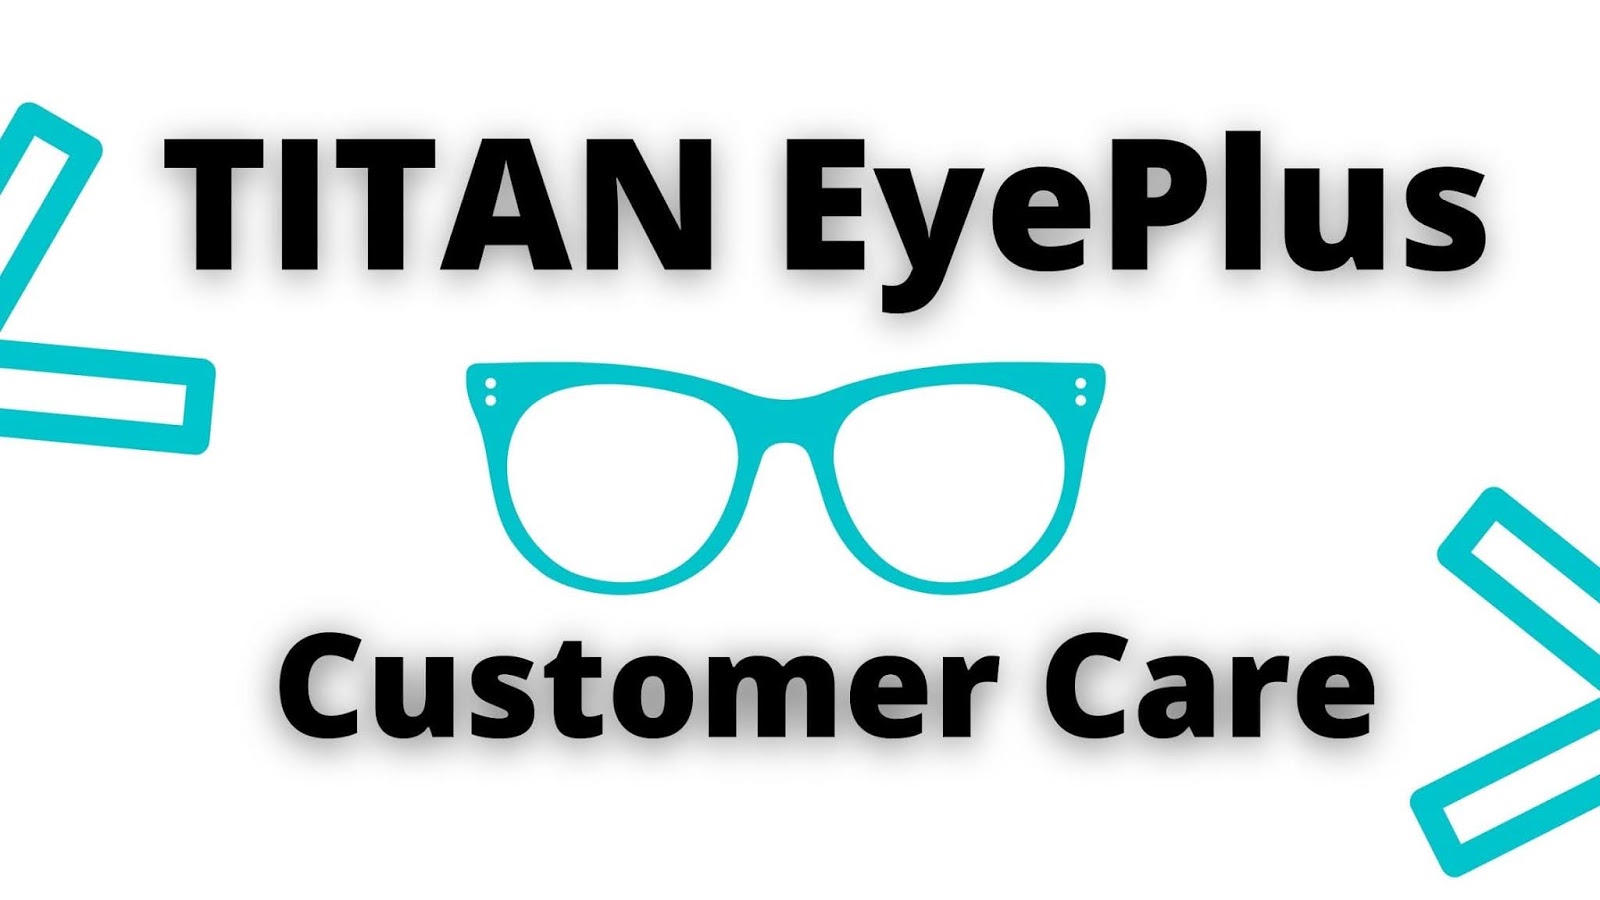 Titan Eye Plus in Ambedkar Road,Delhi - Best Eyeglass Lens Dealers in Delhi  - Justdial